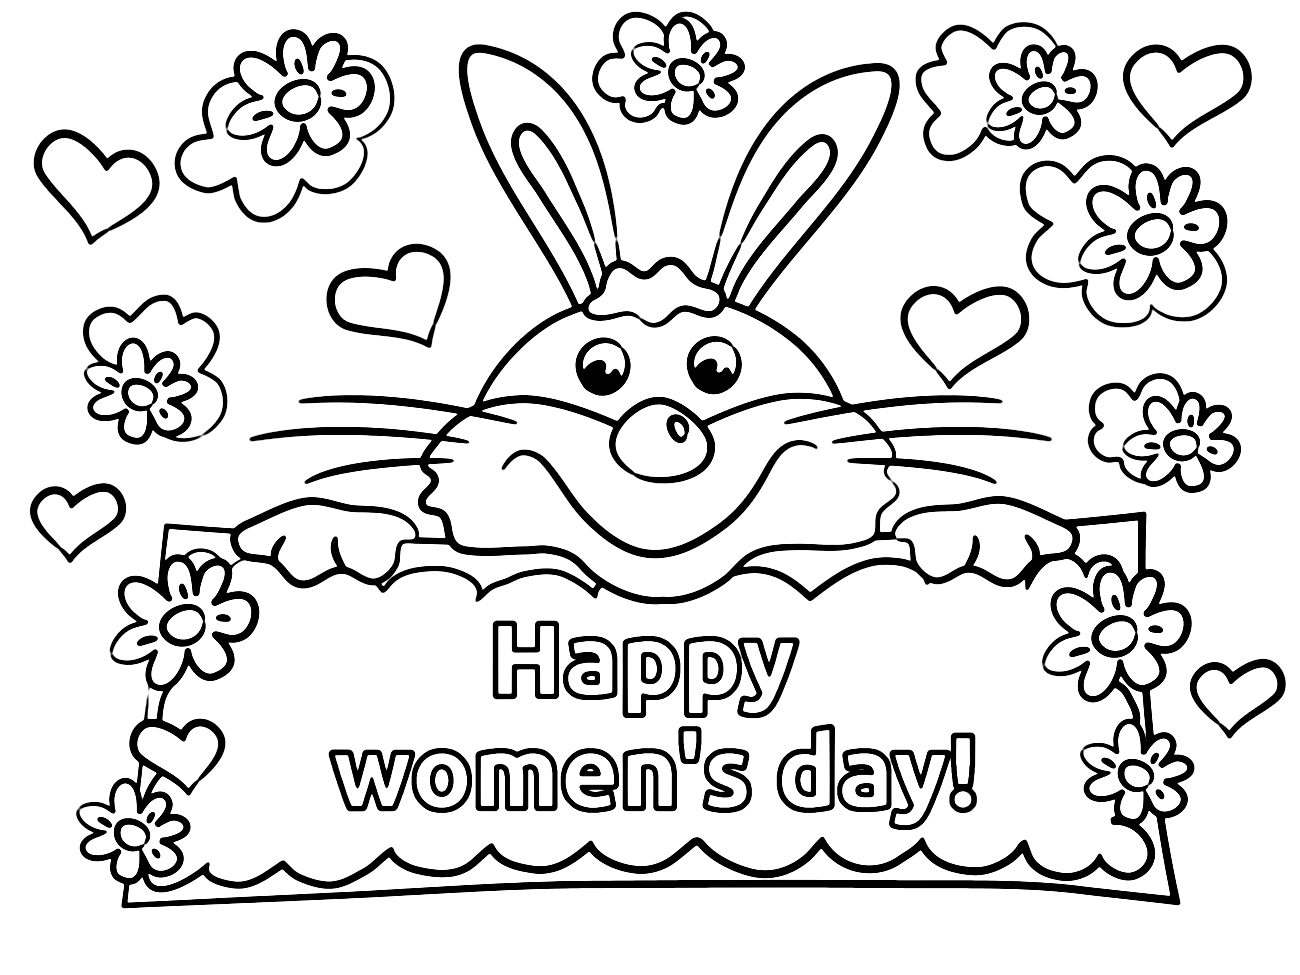 Hasenkarte zum Frauentag von Bunny